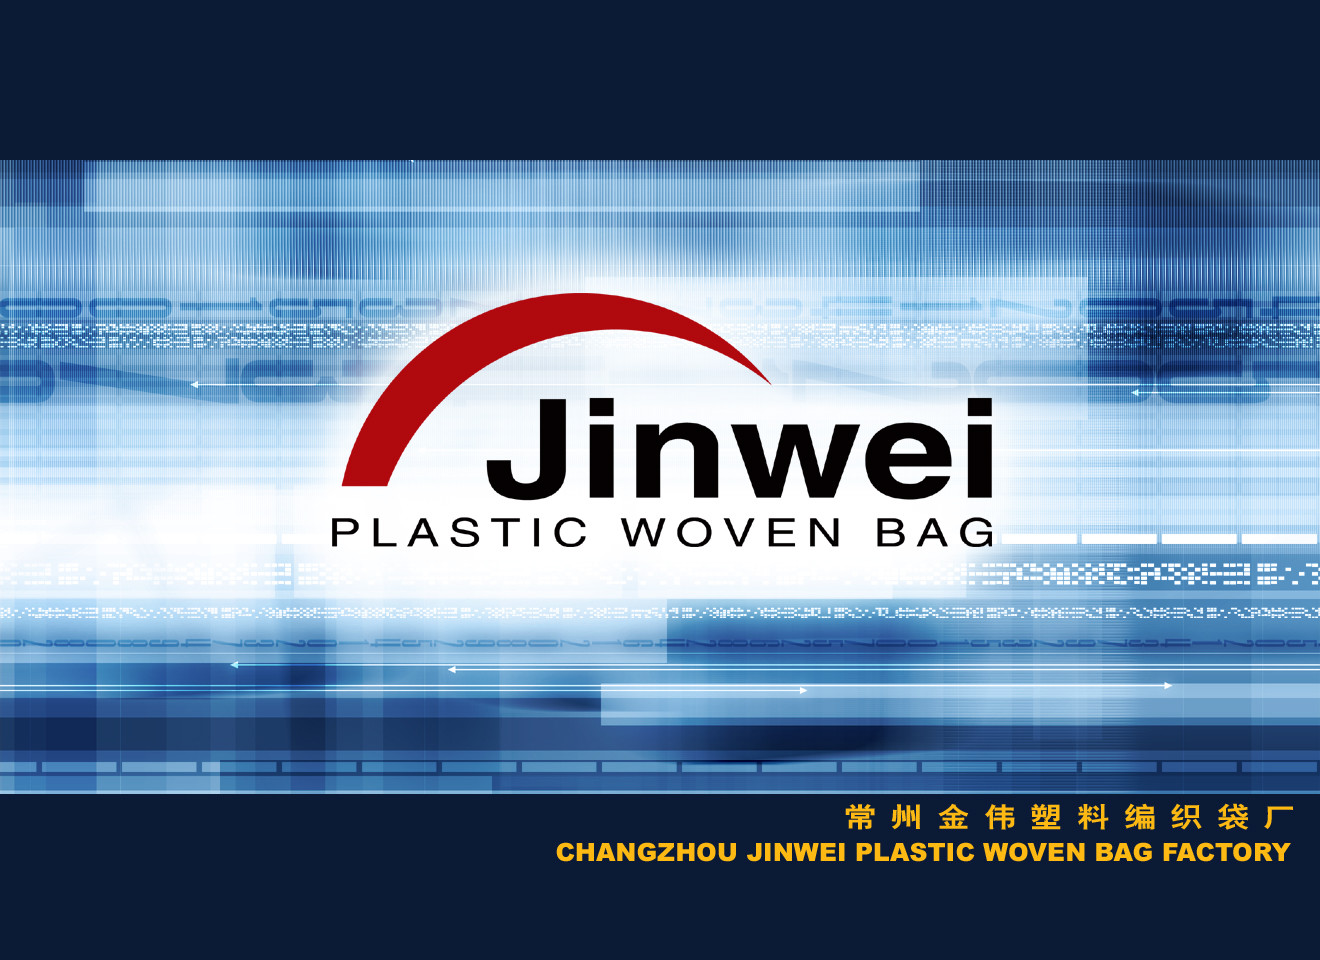 Changzhou jinwei plastic woven bag factory